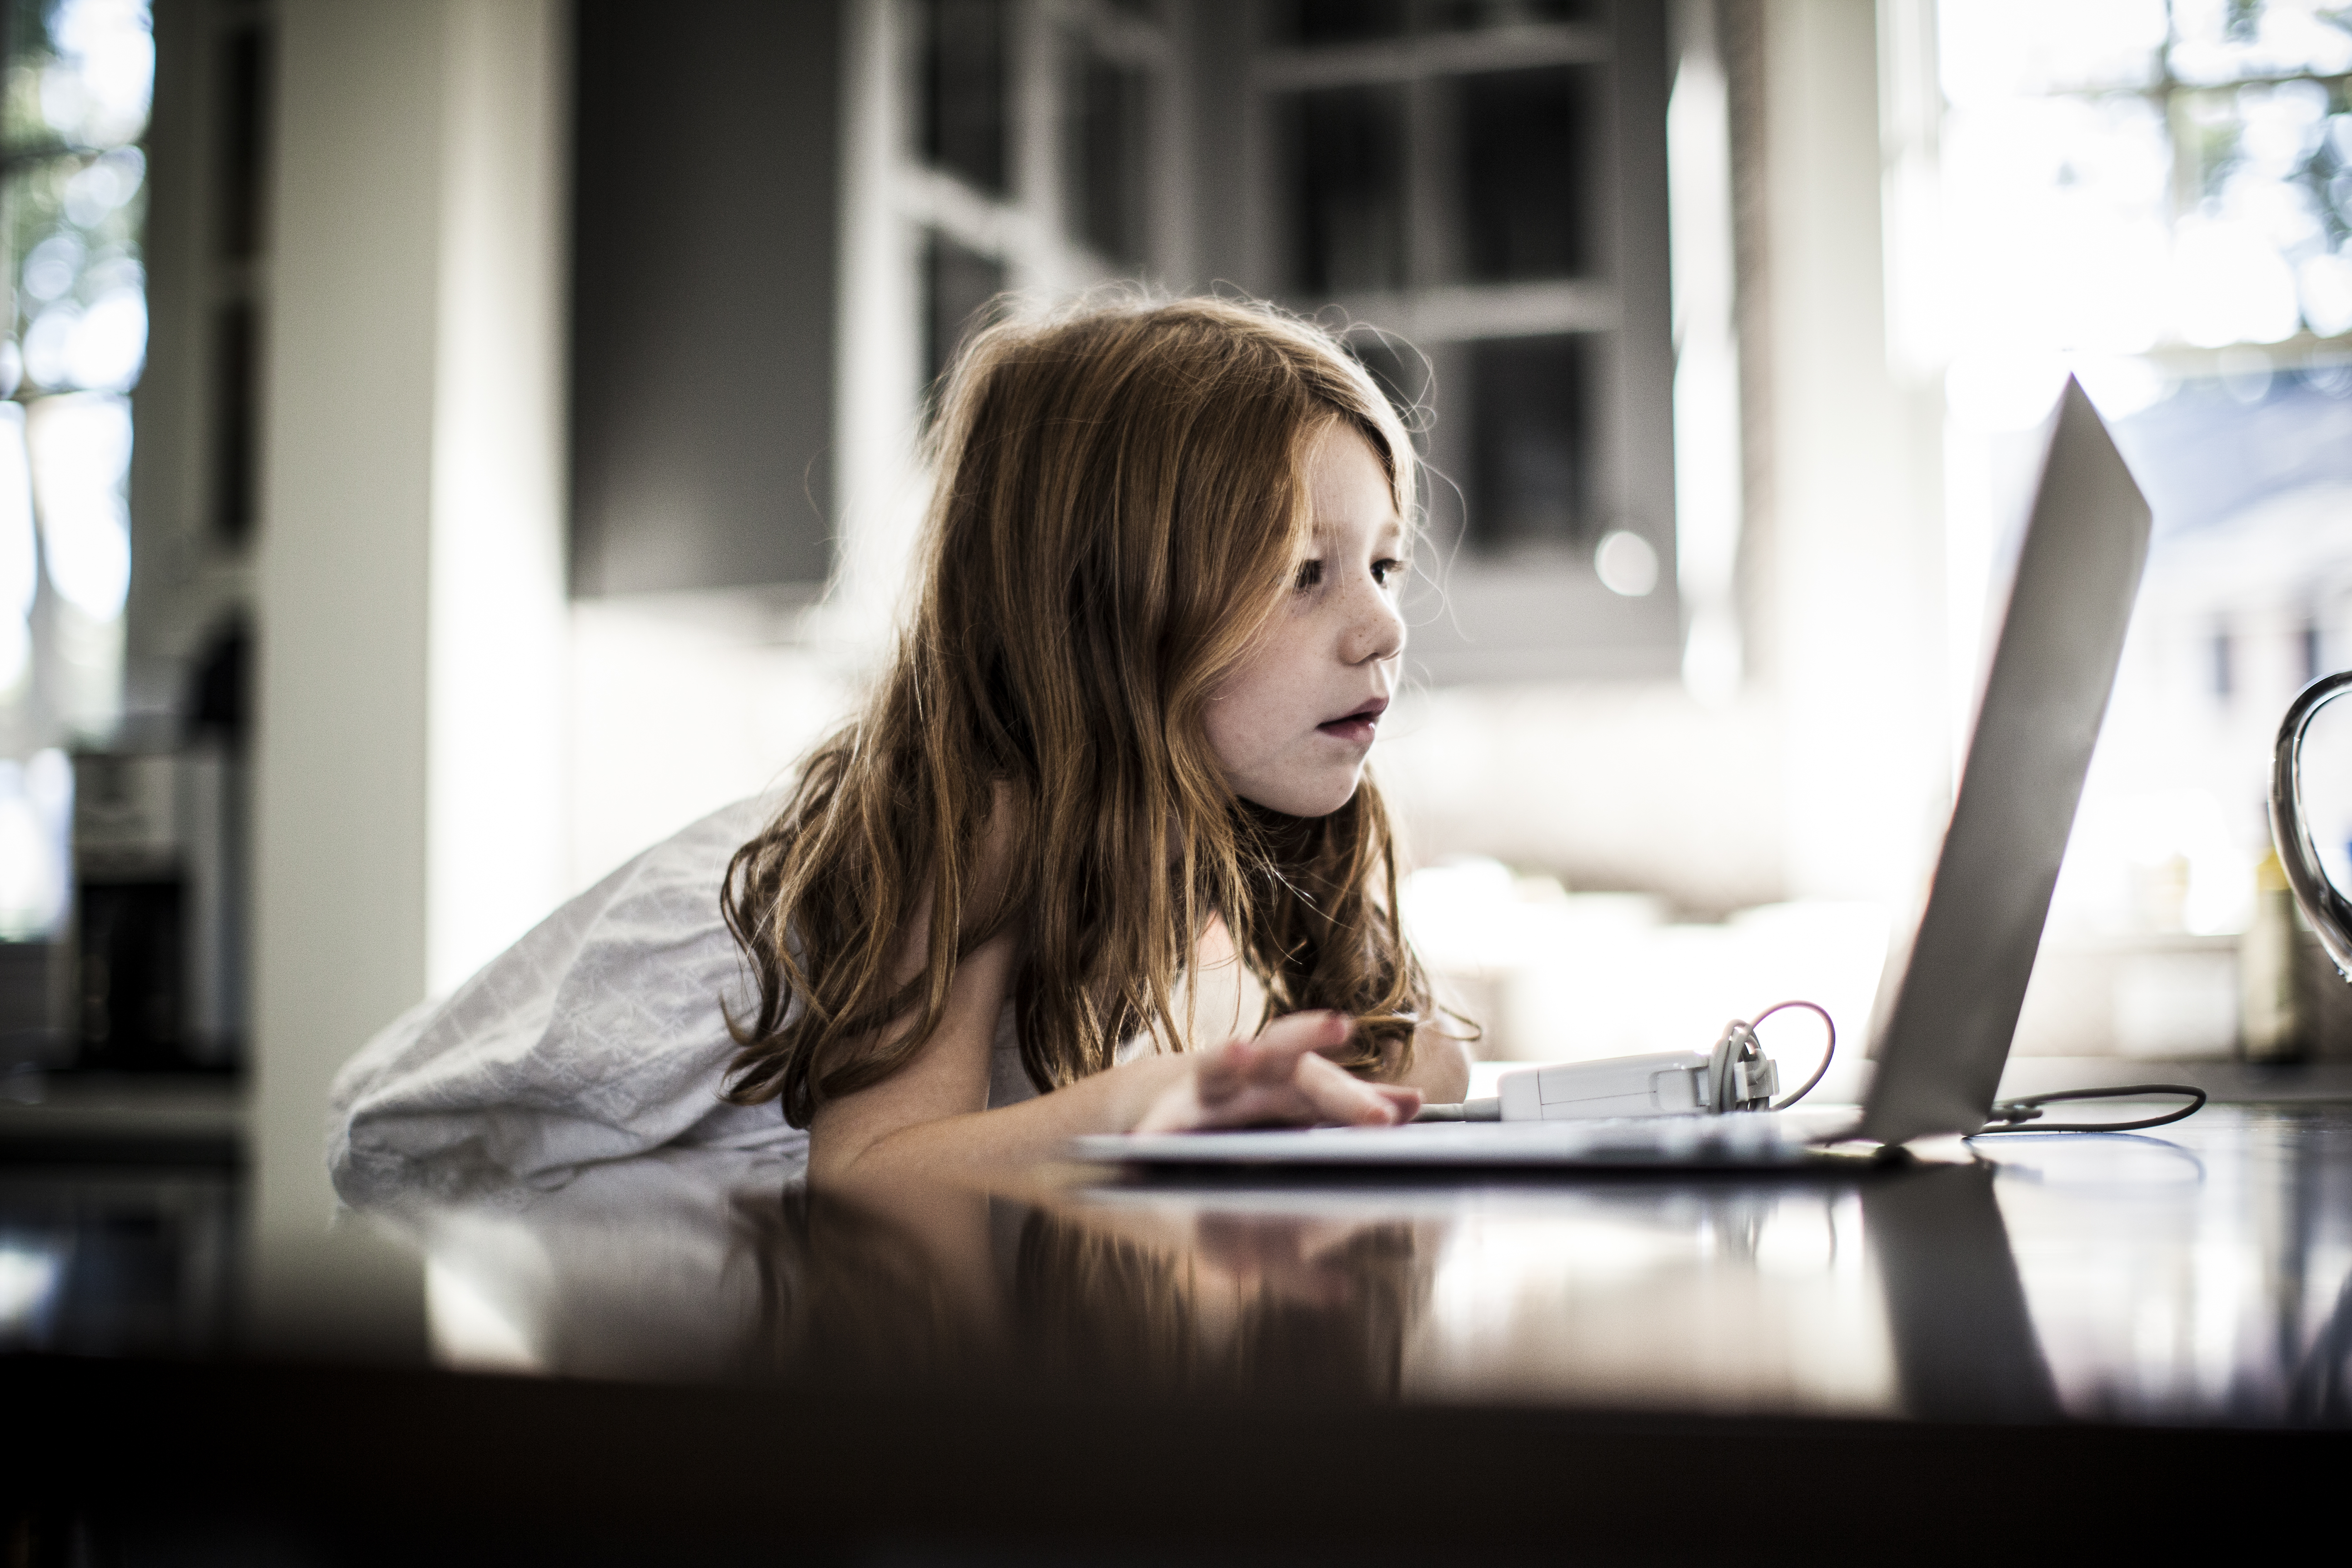 Las pantallas no son “niñeras”: los pediatras piden restringir su uso entre los más pequeños